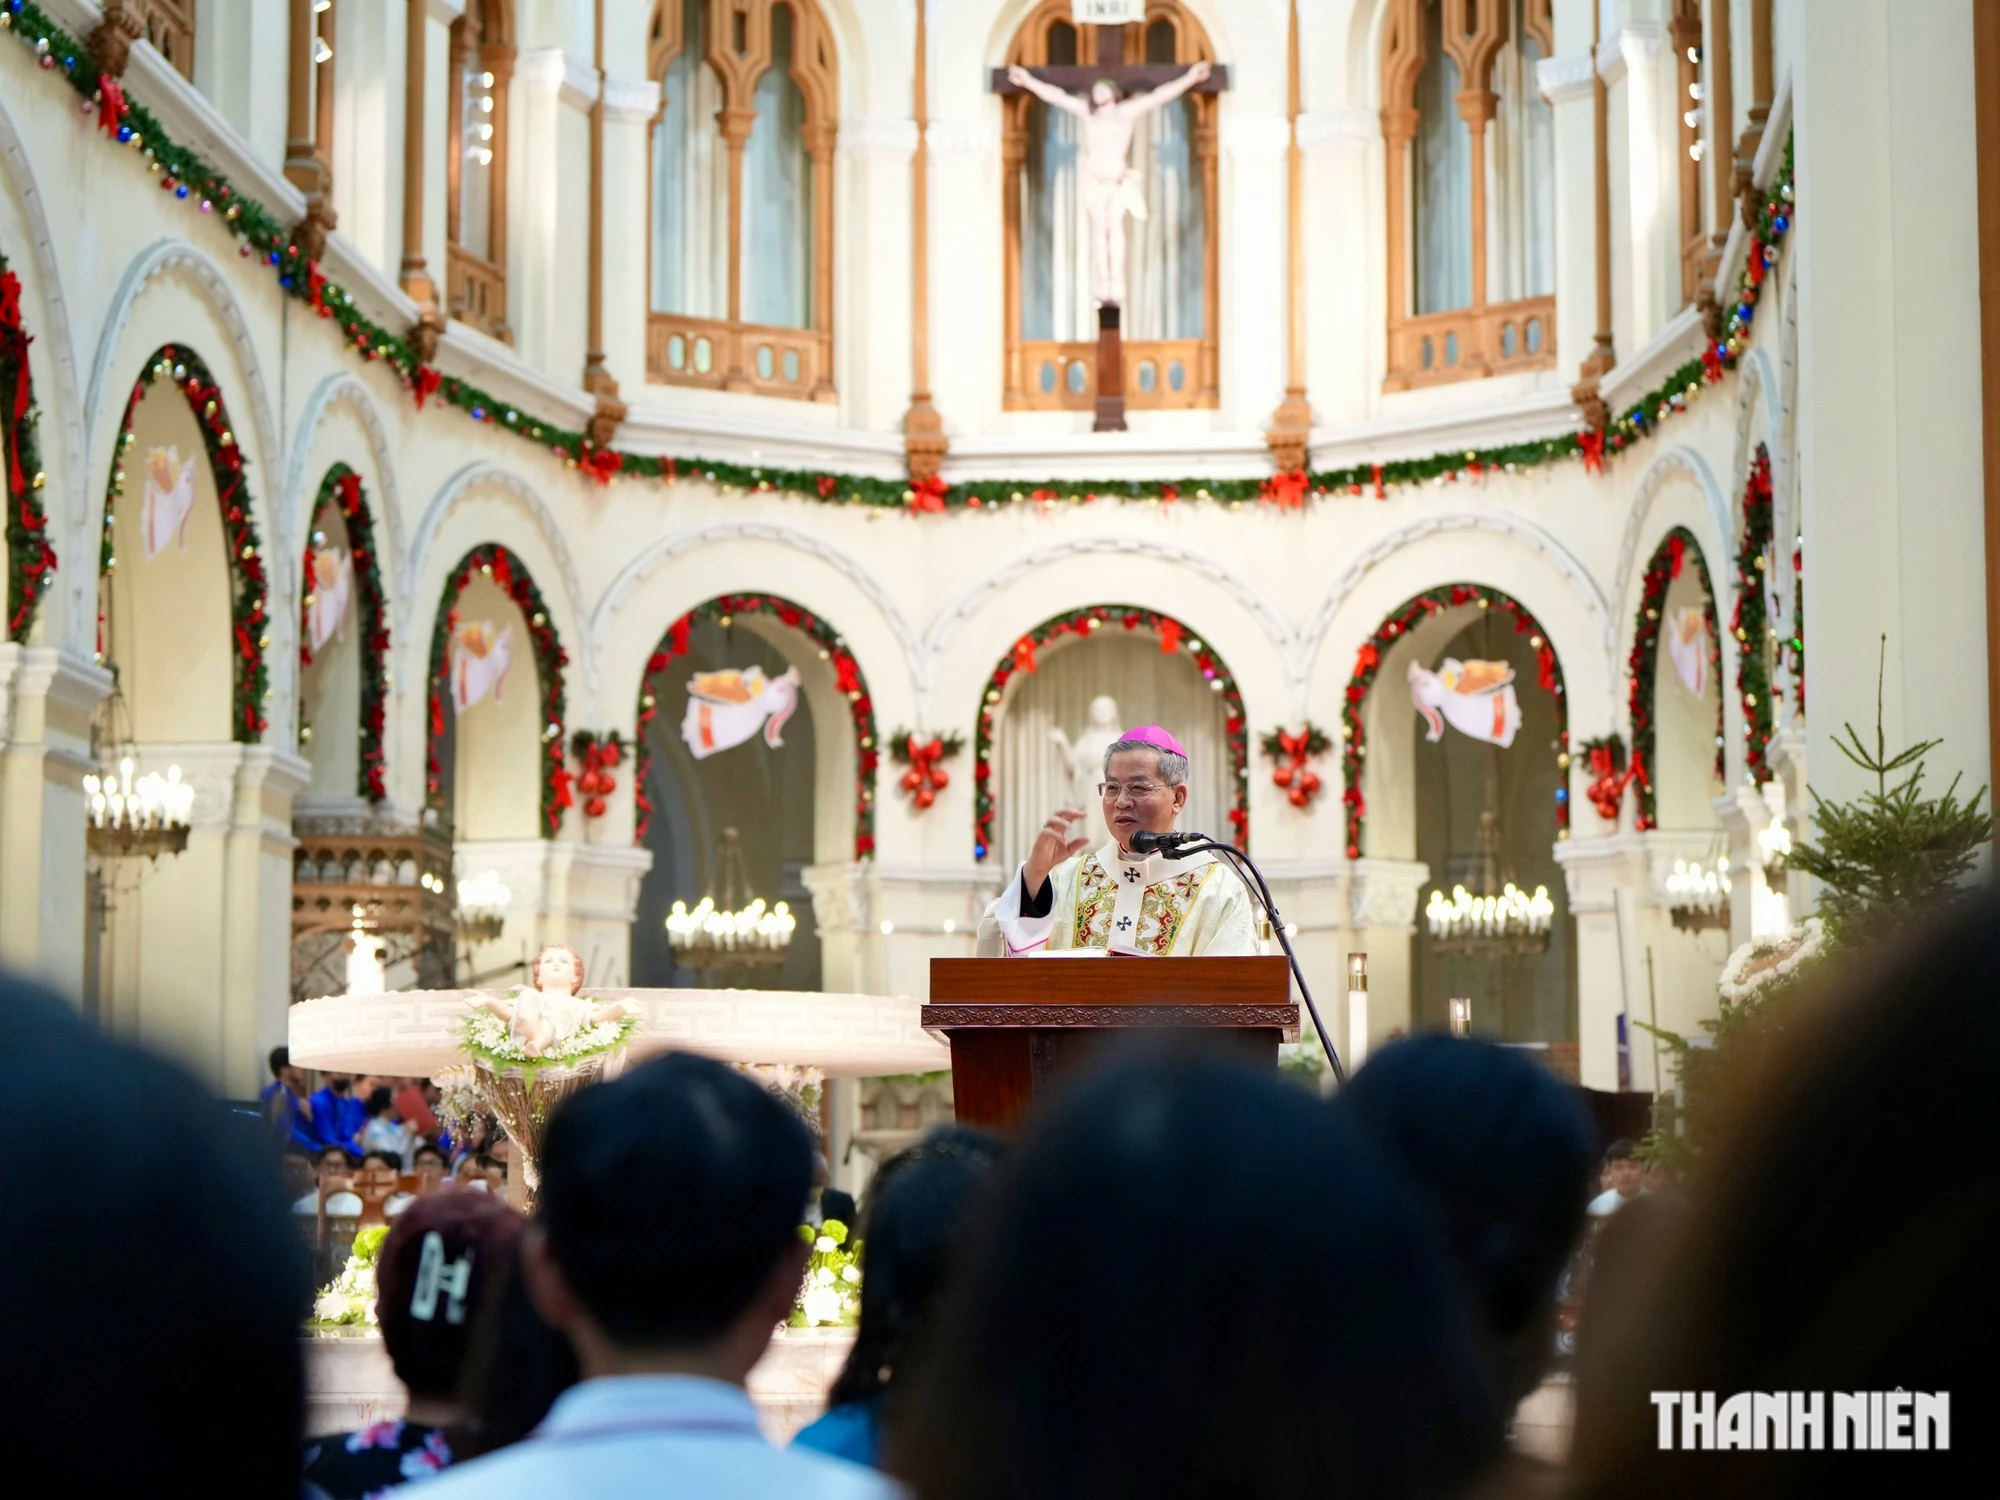 Hơn 1.000 người vào Nhà thờ Đức Bà Sài Gòn làm thánh lễ mừng Chúa Giáng sinh- Ảnh 11.